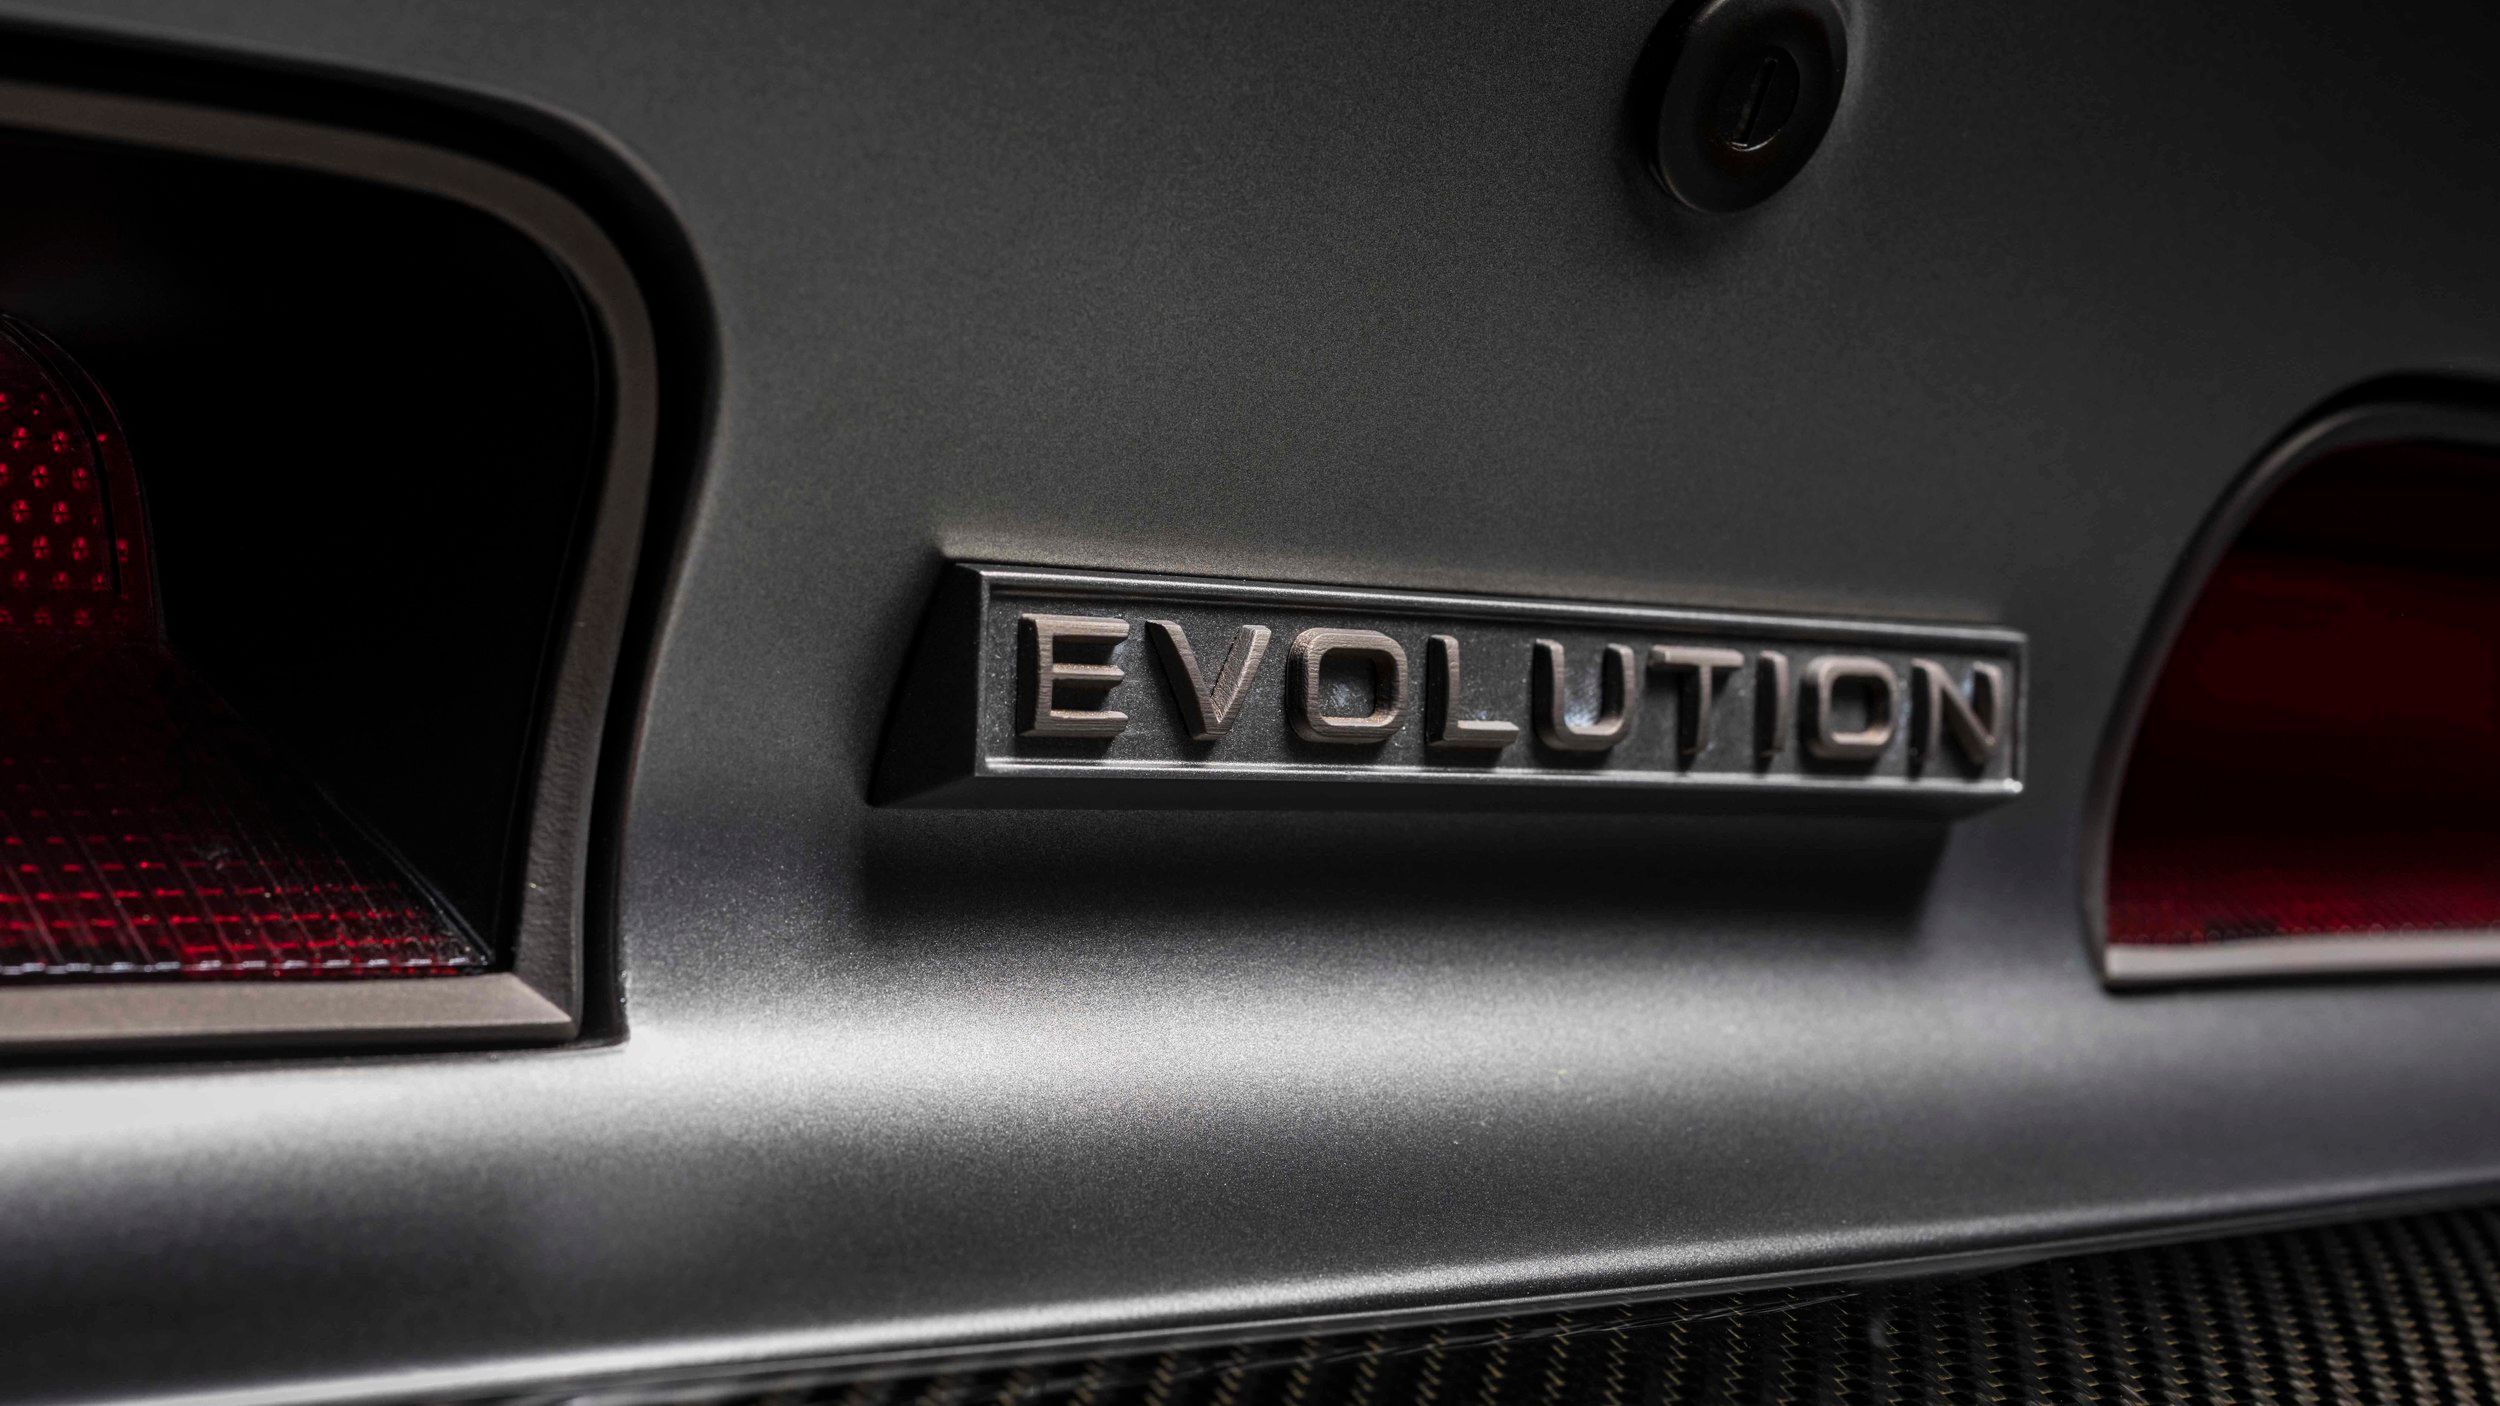 2018 Dodge Charger Evolution